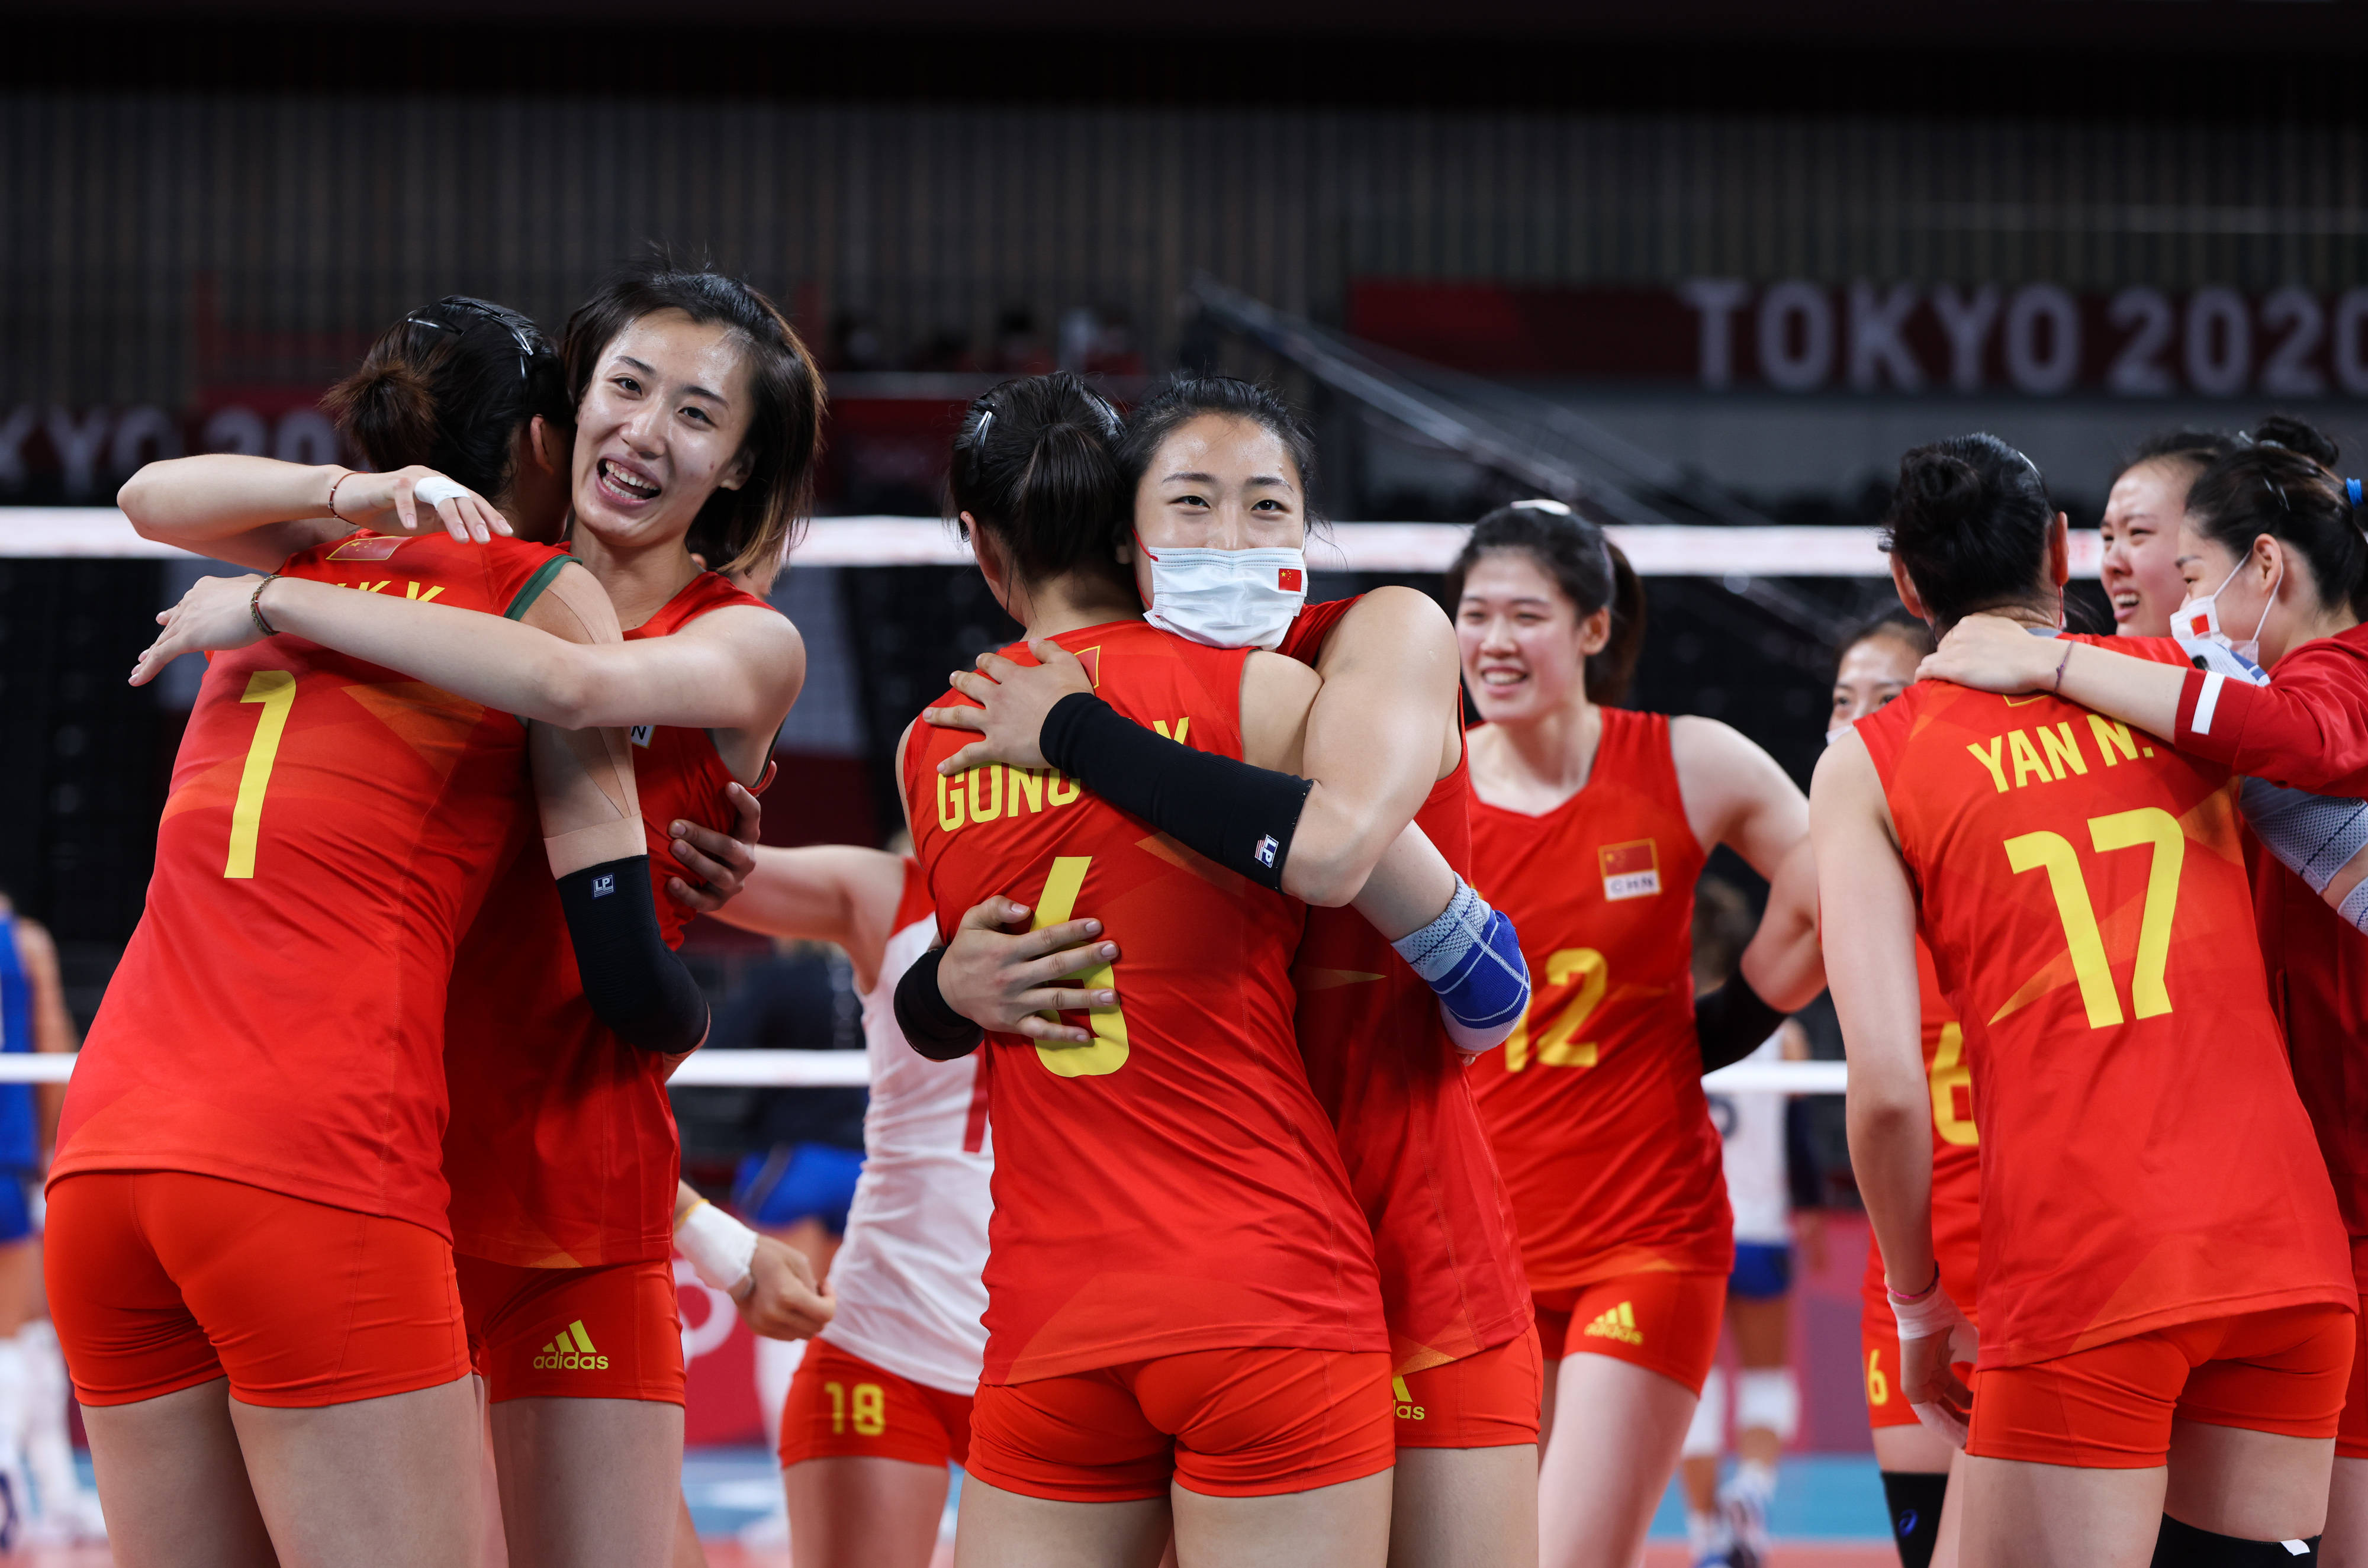 排球—女排小组赛:中国胜意大利